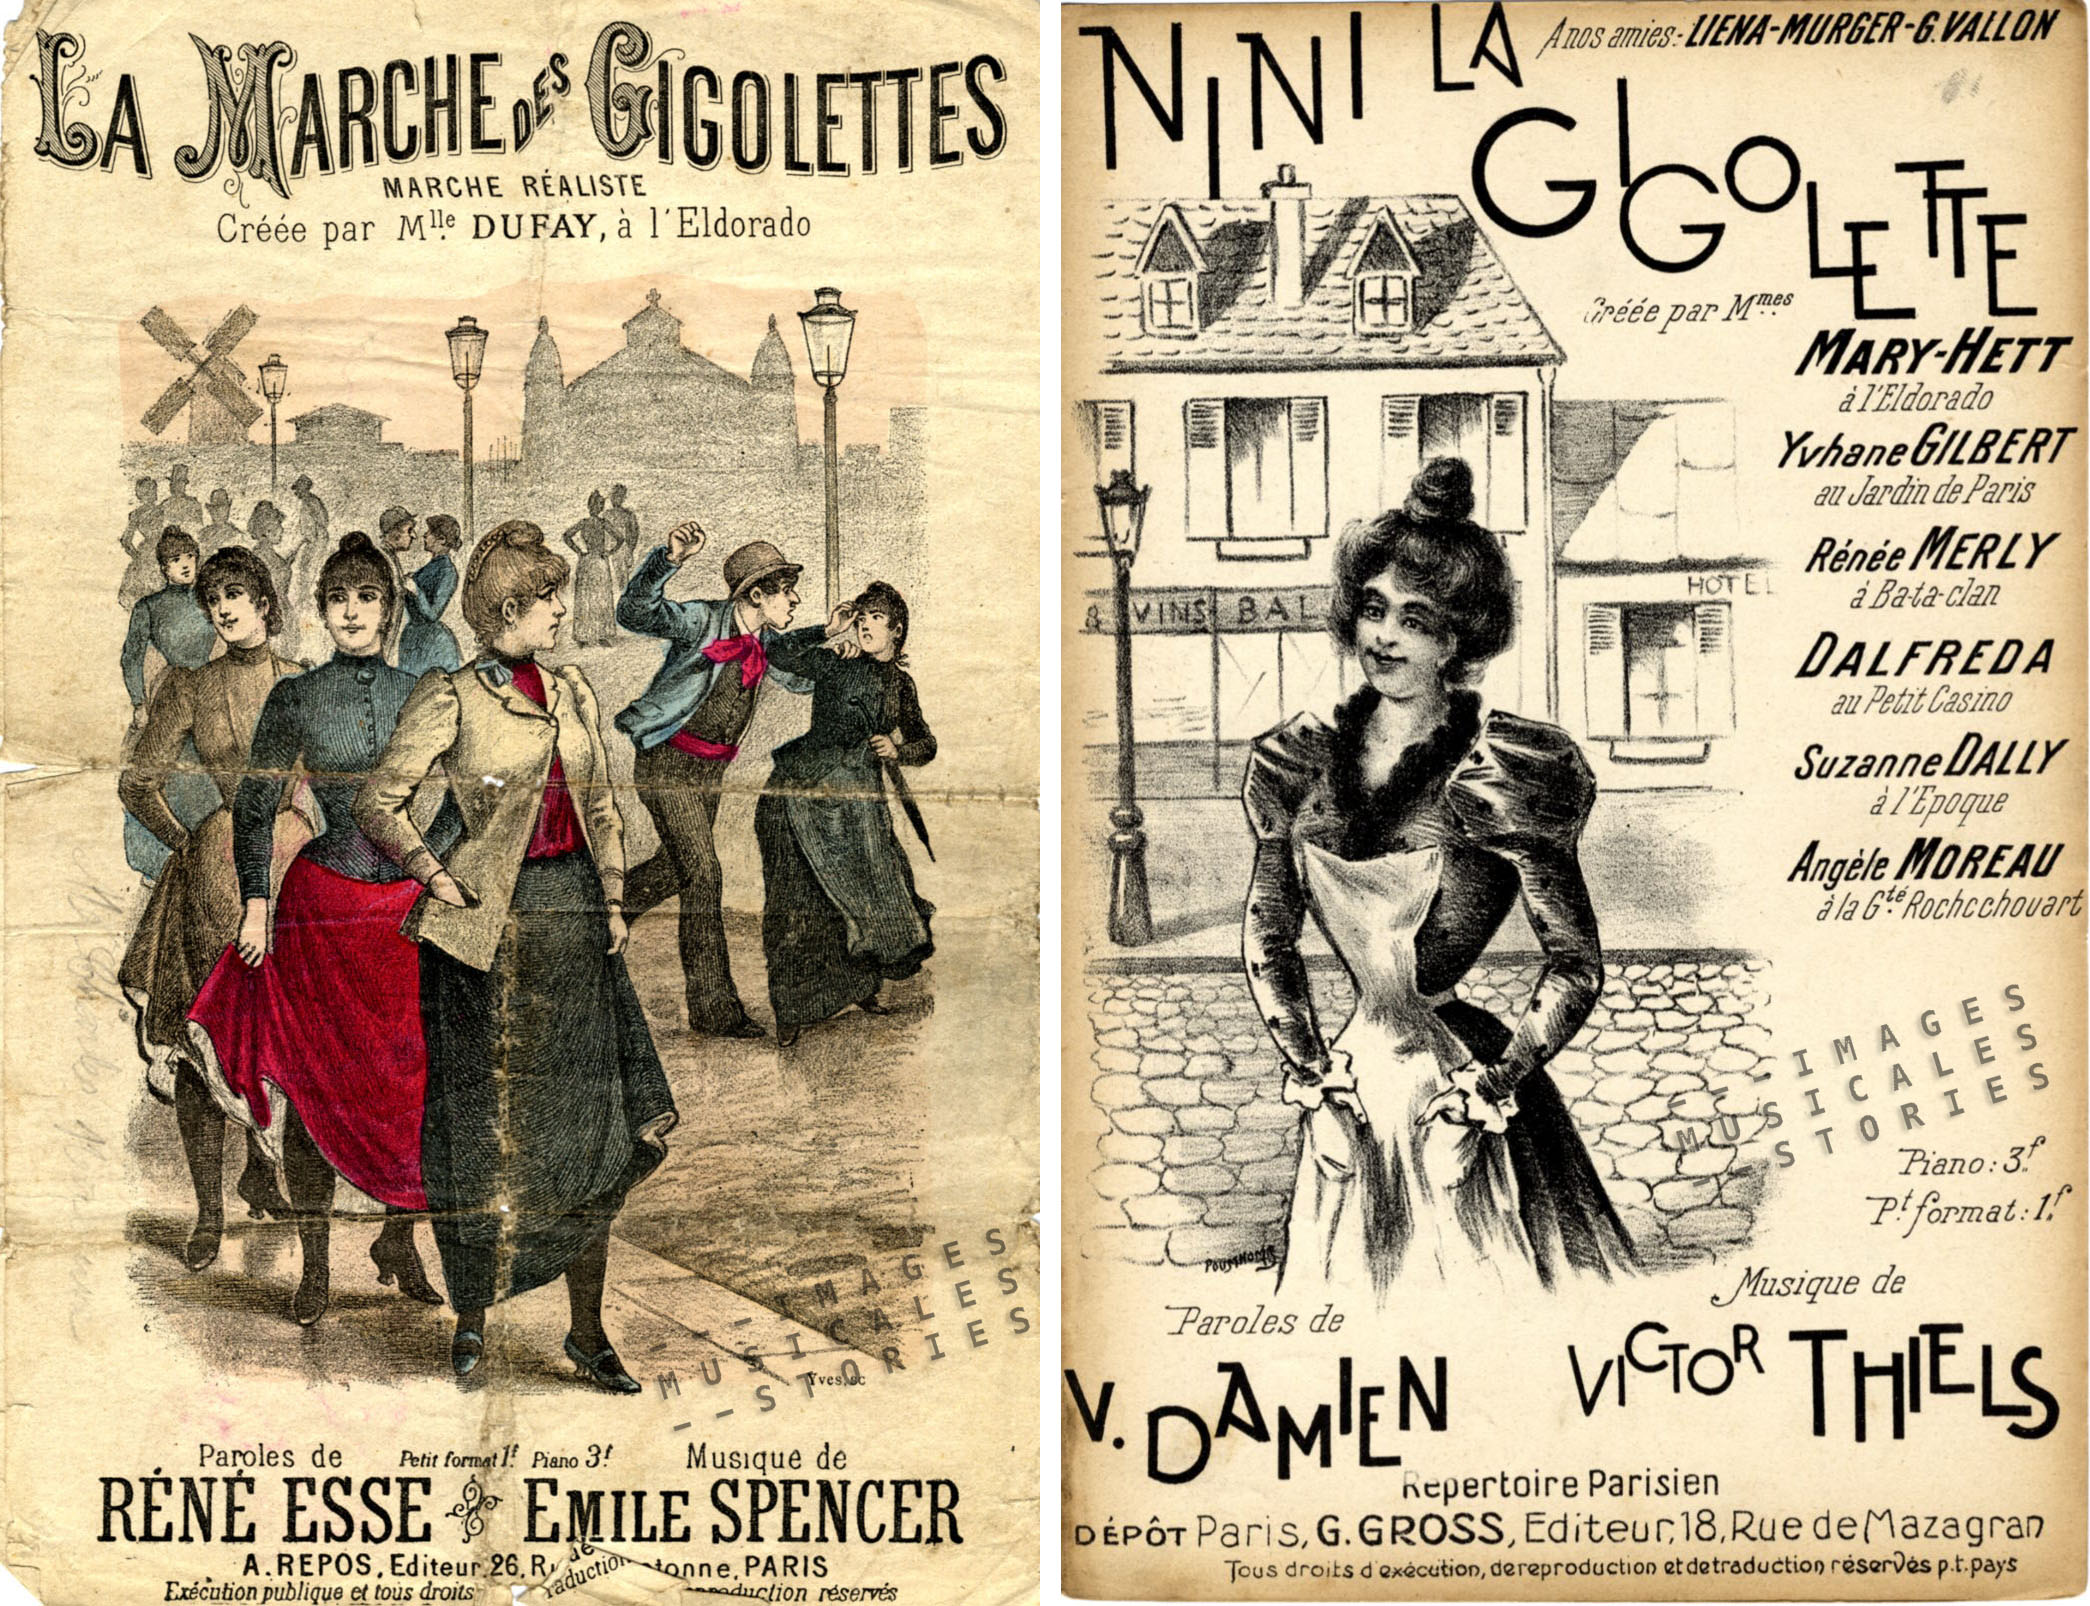 Left: 'La Marche des Gigolettes'